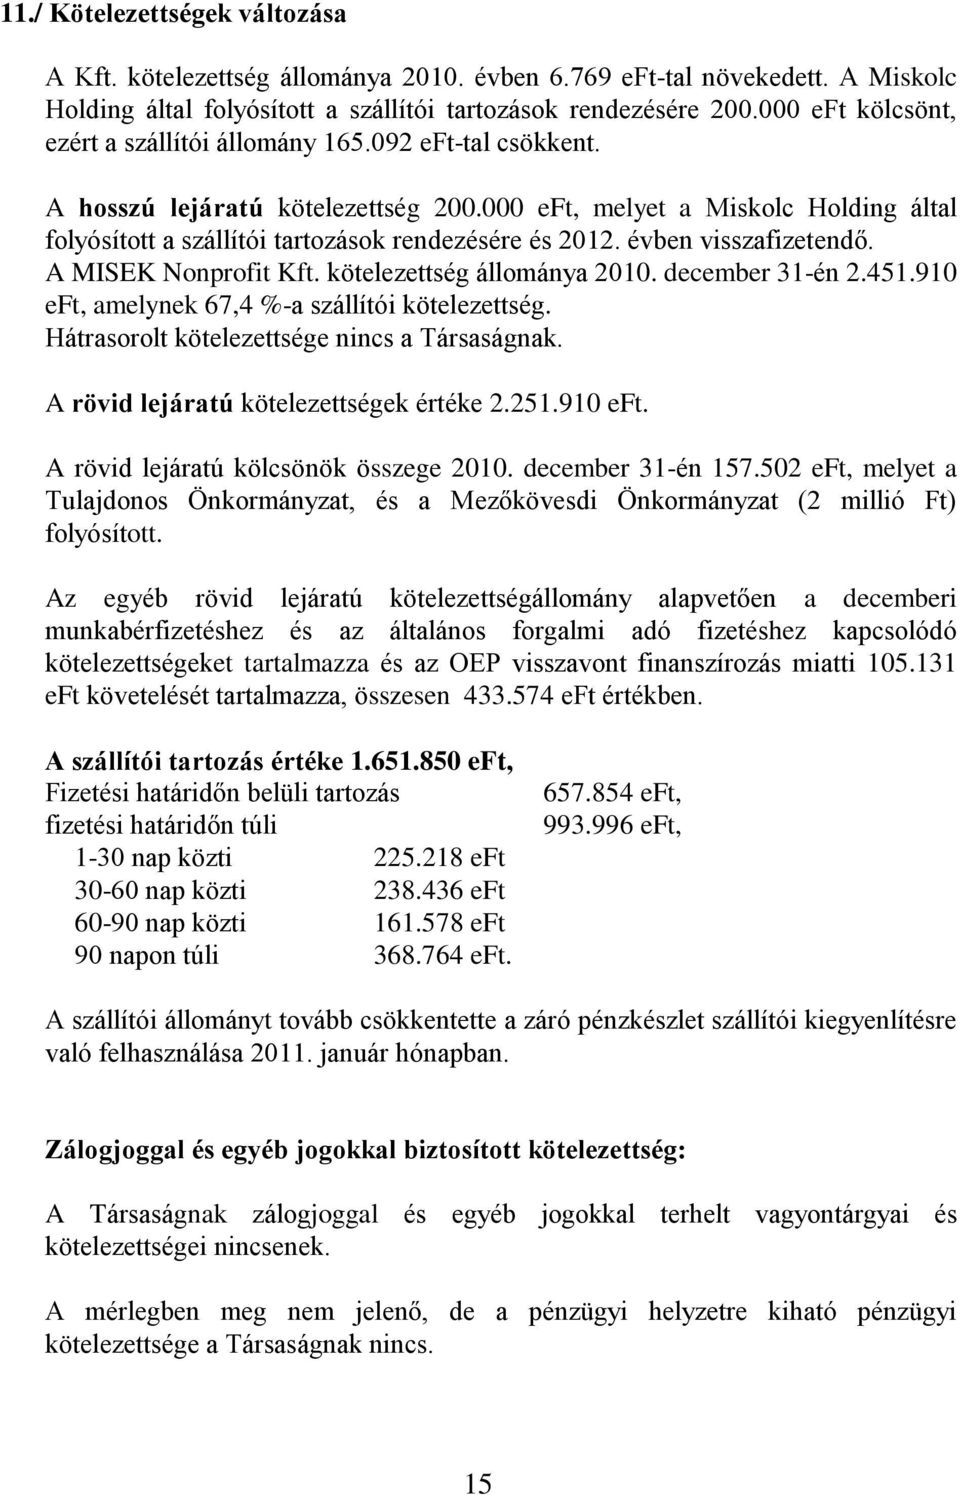 000 eft, melyet a Miskolc Holding által folyósított a szállítói tartozások rendezésére és 2012. évben visszafizetendő. A MISEK Nonprofit Kft. kötelezettség állománya 2010. december 31-én 2.451.